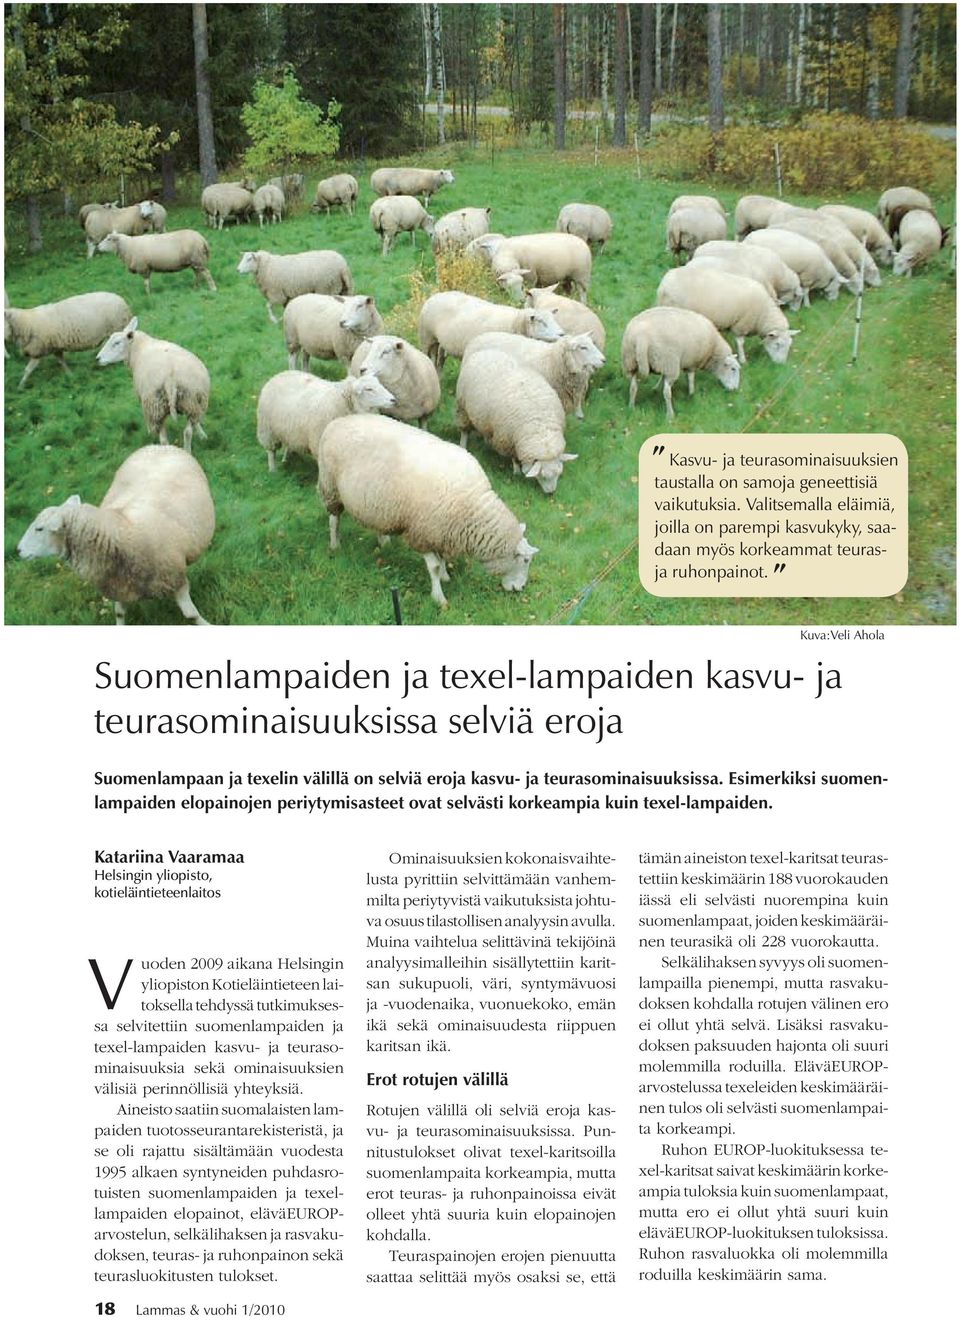 Esimerkiksi suomenlampaiden elopainojen periytymisasteet ovat selvästi korkeampia kuin texel-lampaiden.